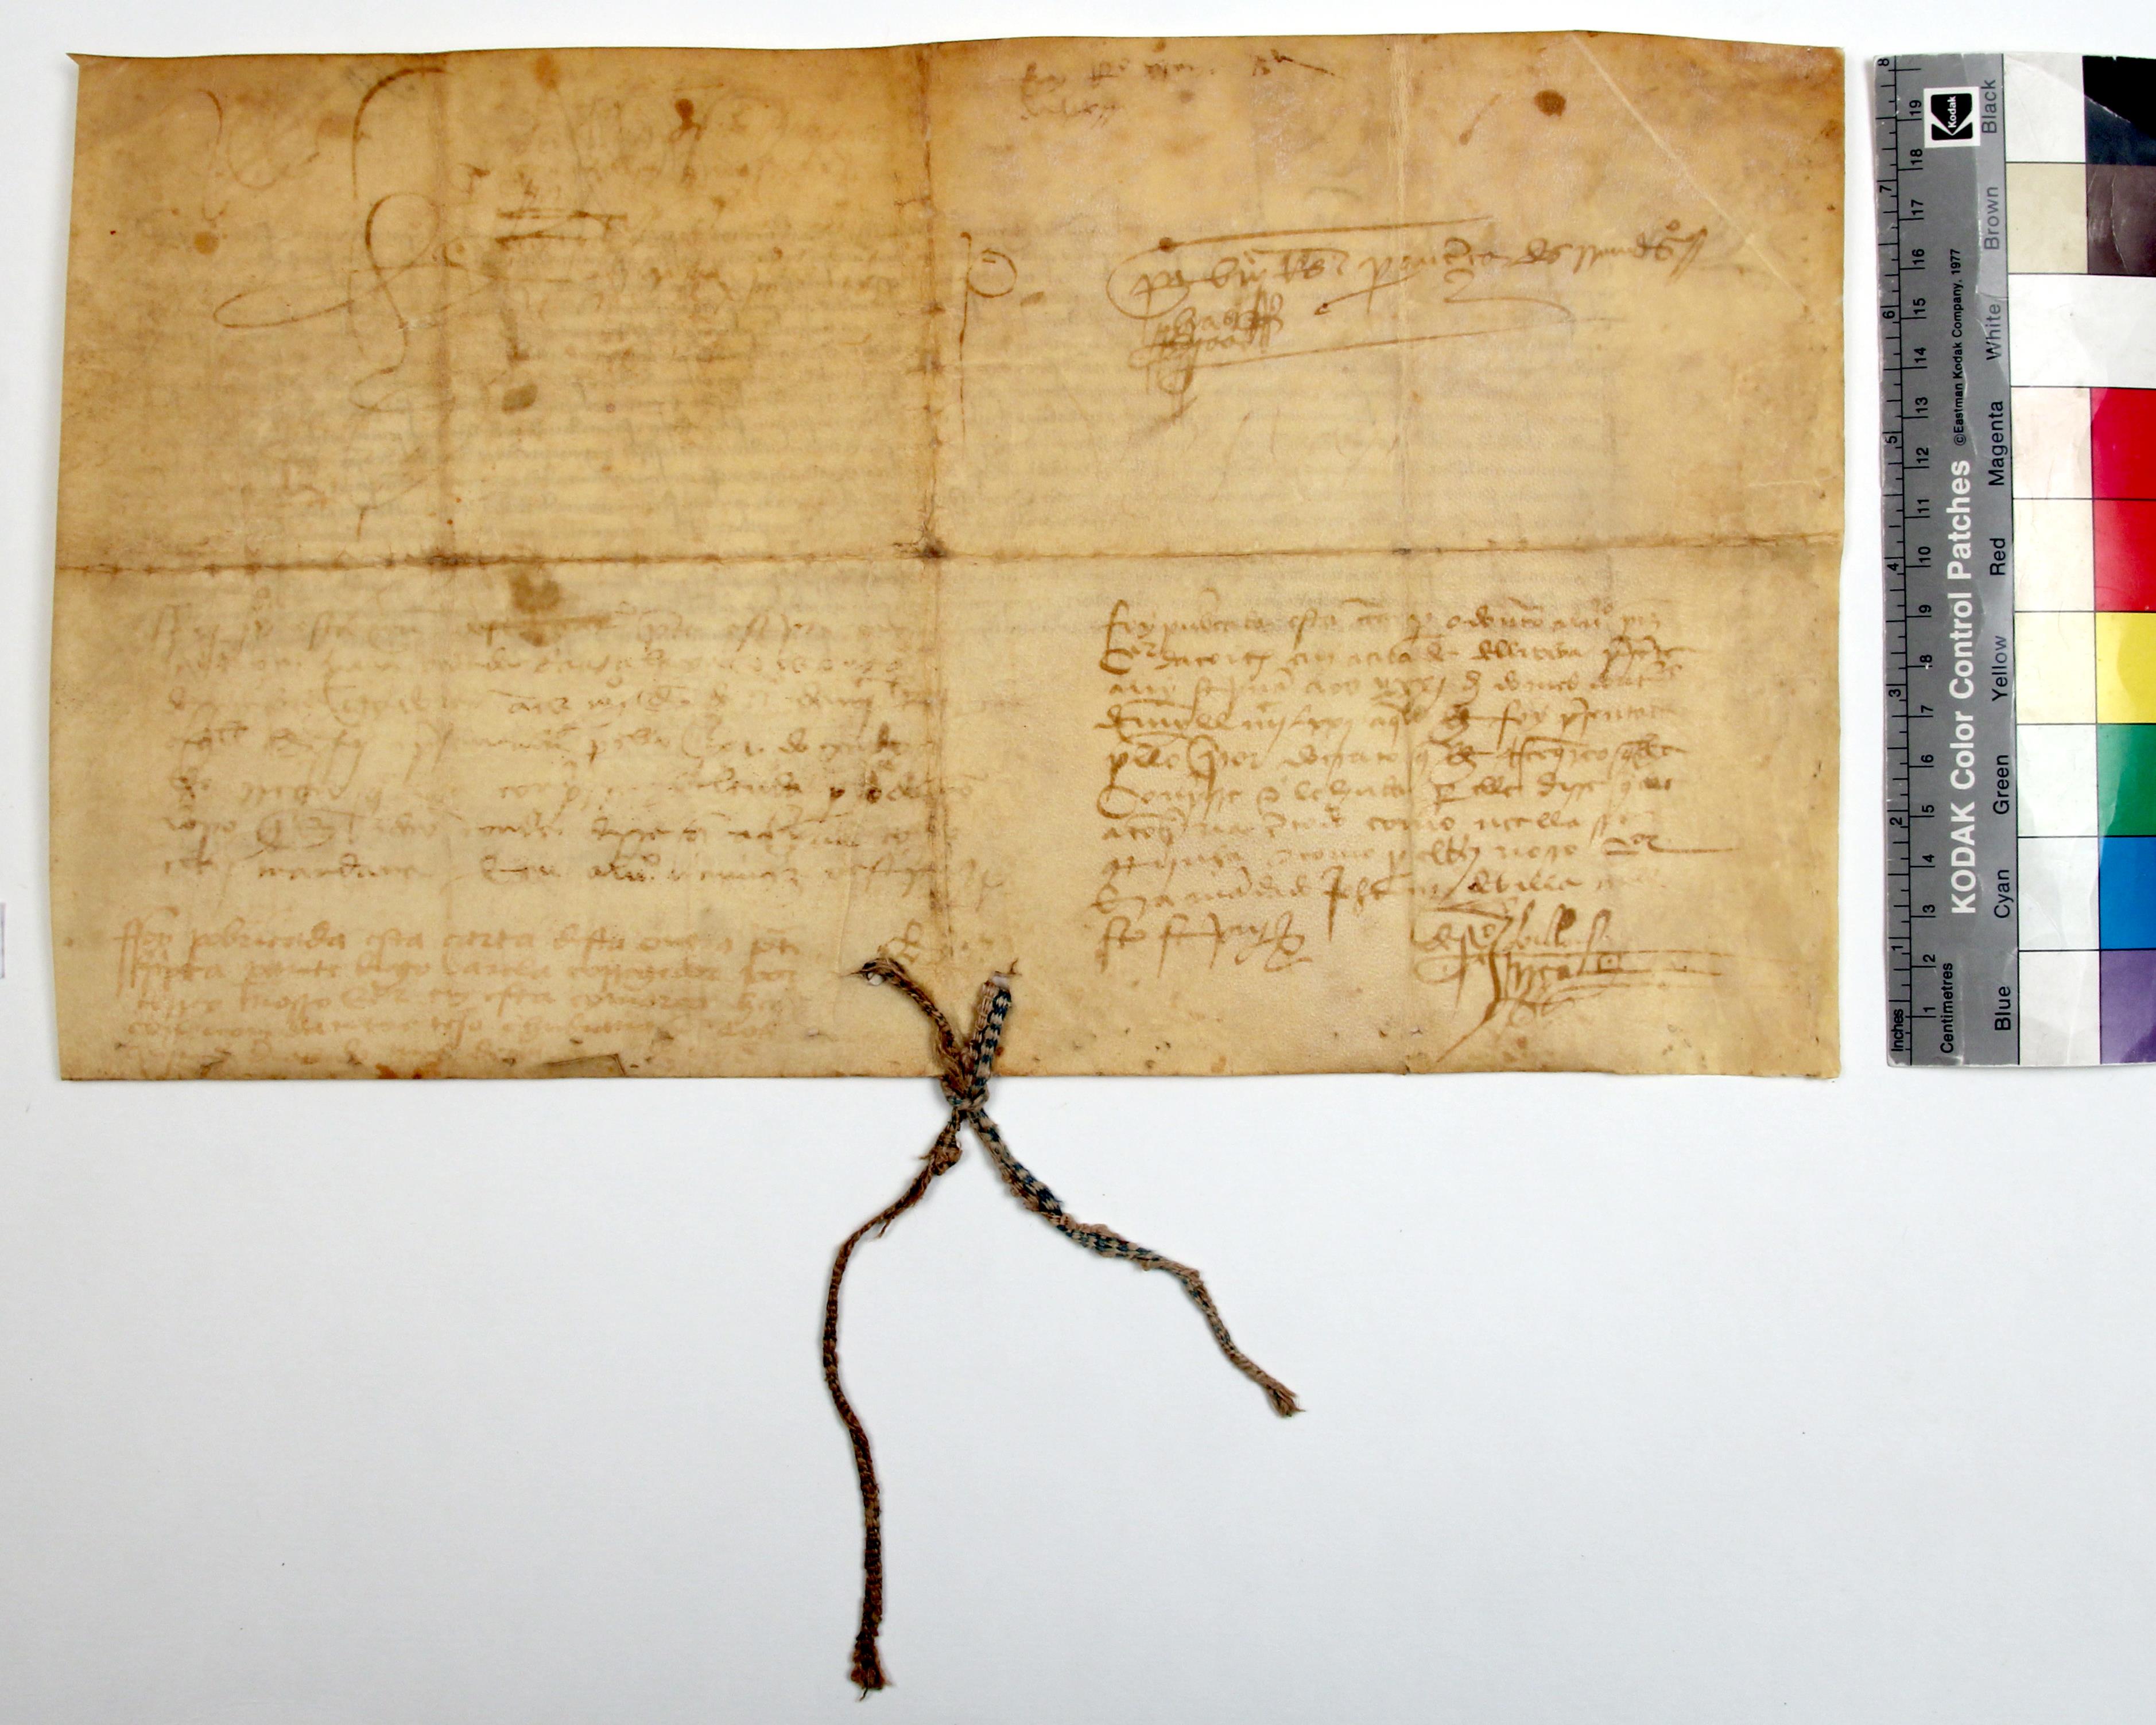 [Carta de D. Afonso V a D. Vasco de Ataíde, prior do Hospital, concedendo privilégios à Ordem dos Hospitalários]